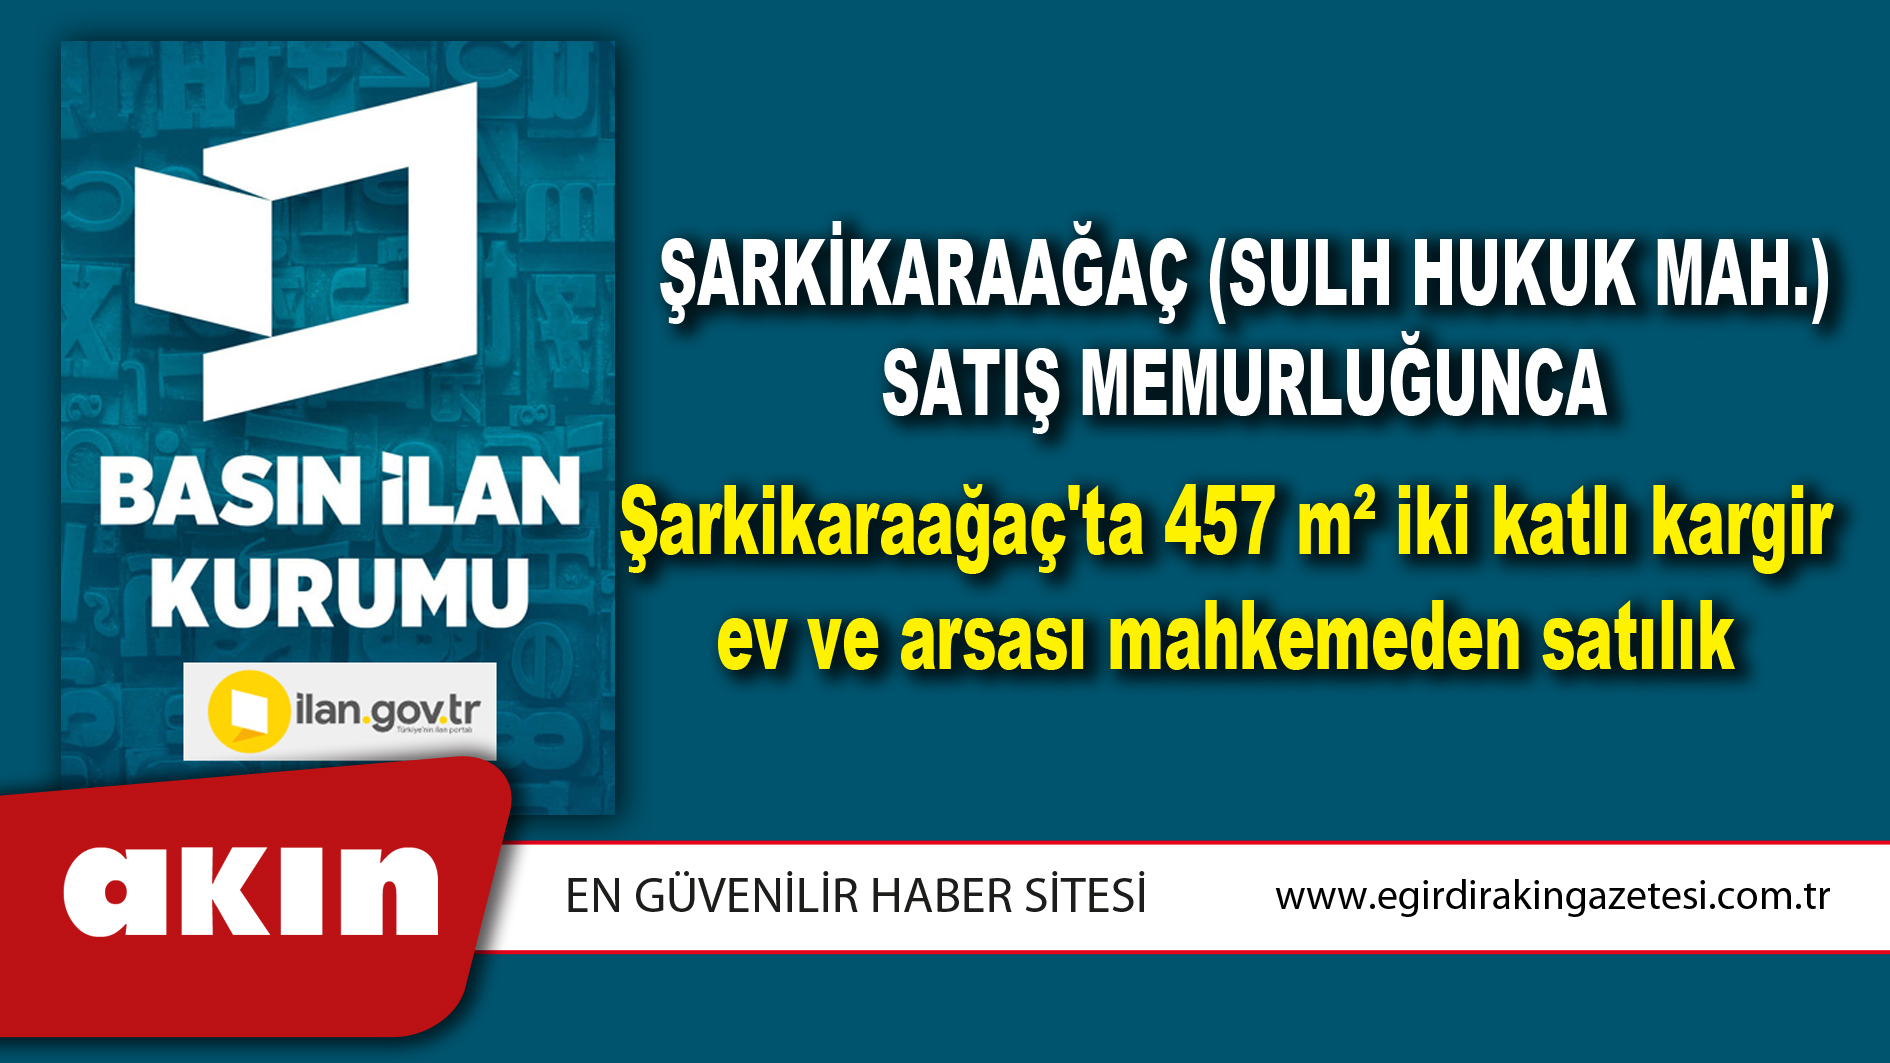 Şarkikaraağaç (Sulh Hukuk Mah.) Satış Memurluğunca Şarkikaraağaç'ta 457 m² iki katlı kargir ev ve arsası mahkemeden satılık